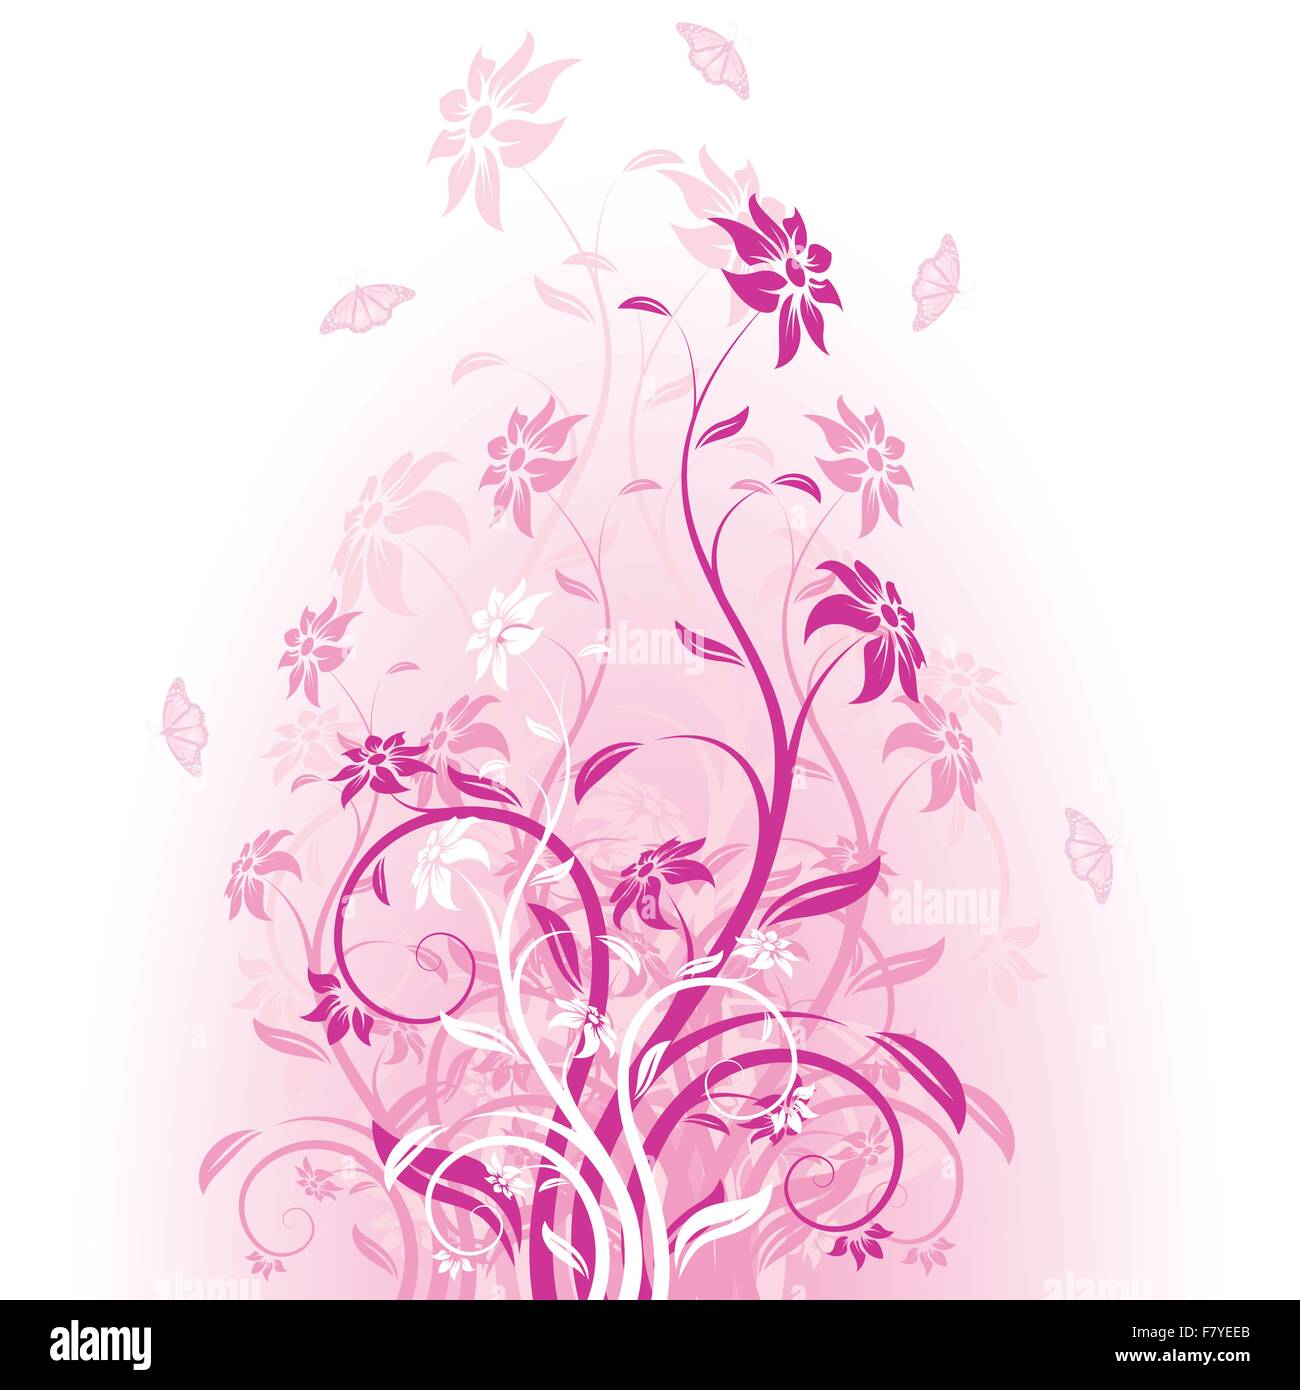 Vector flowers in pink Stock Vector